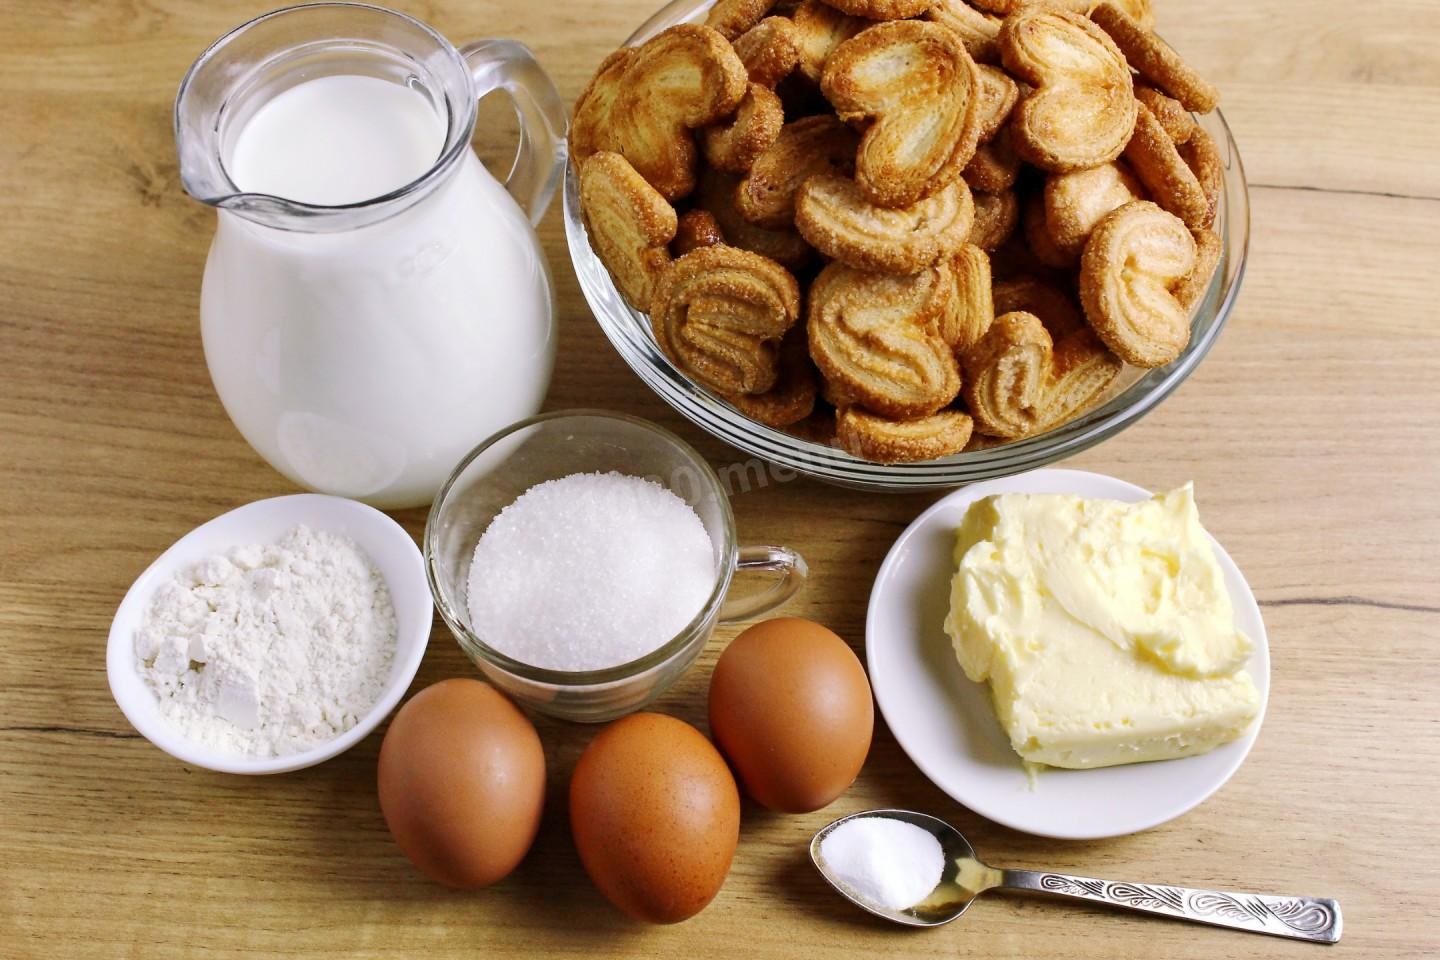 Крем для торта яйцо сахар масло. Печения из муки и молока и яиц. Пирог с молоком. Наполеон из печенья ушки. Масленица мука молоко яйца масло.